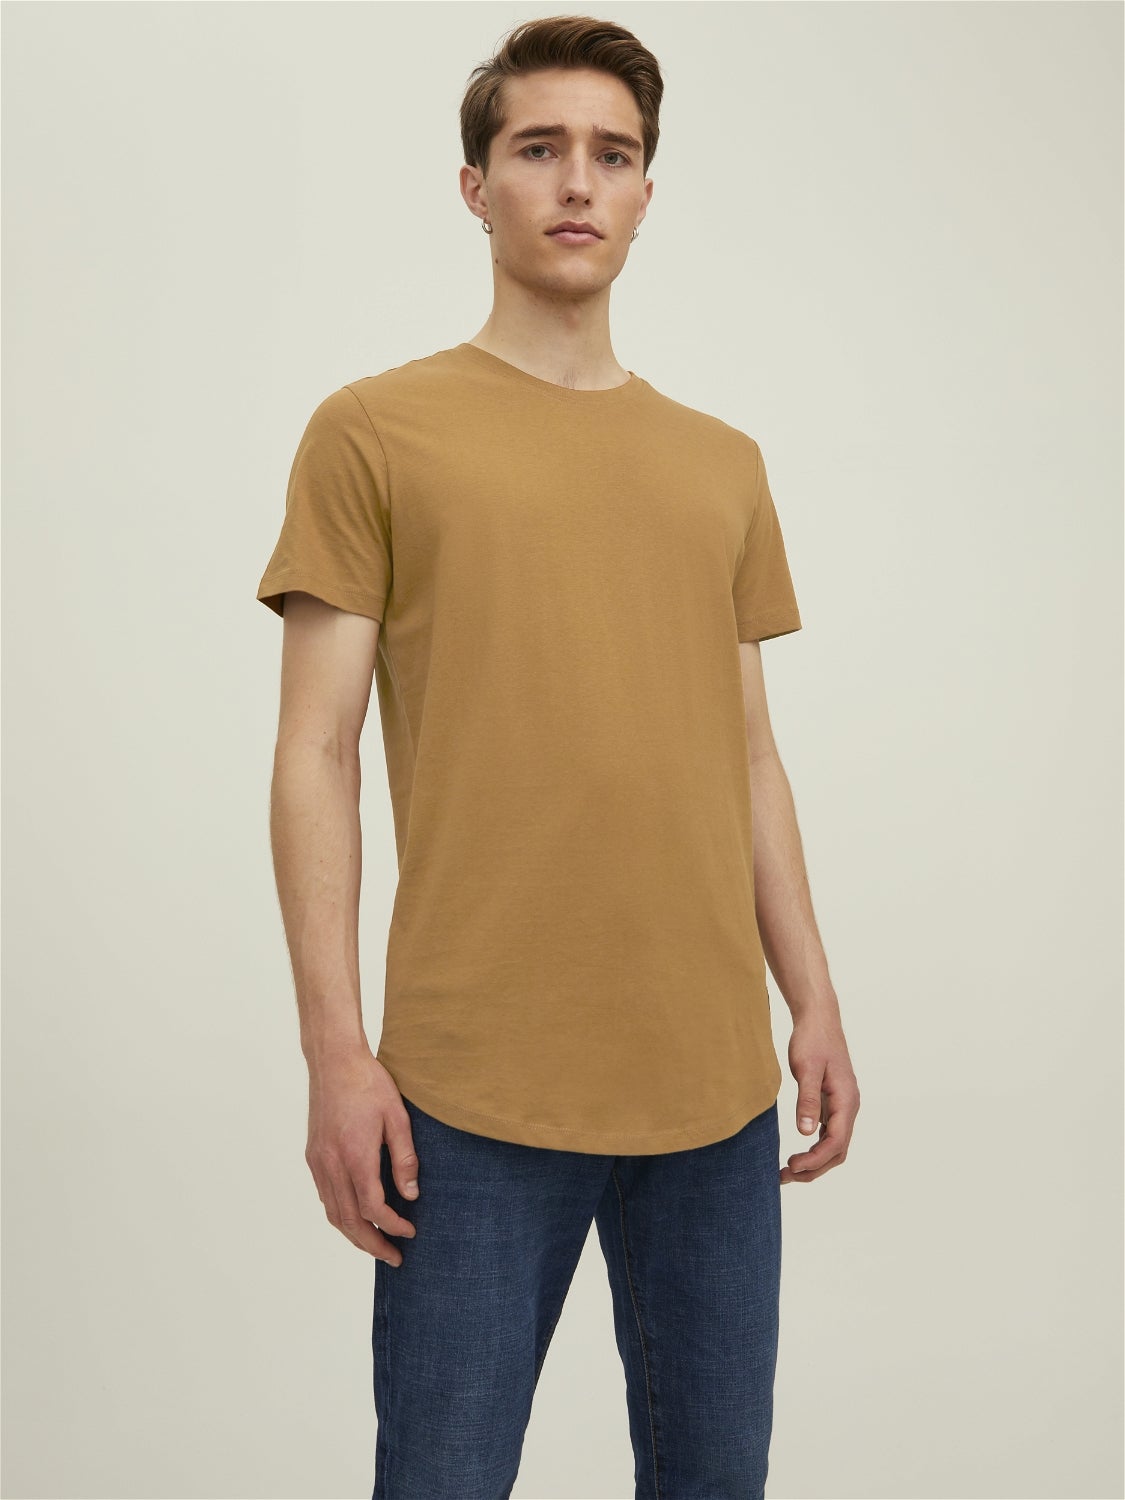 DAMEN Hemden & T-Shirts Falten Zara Bluse Rabatt 67 % Grün XS 